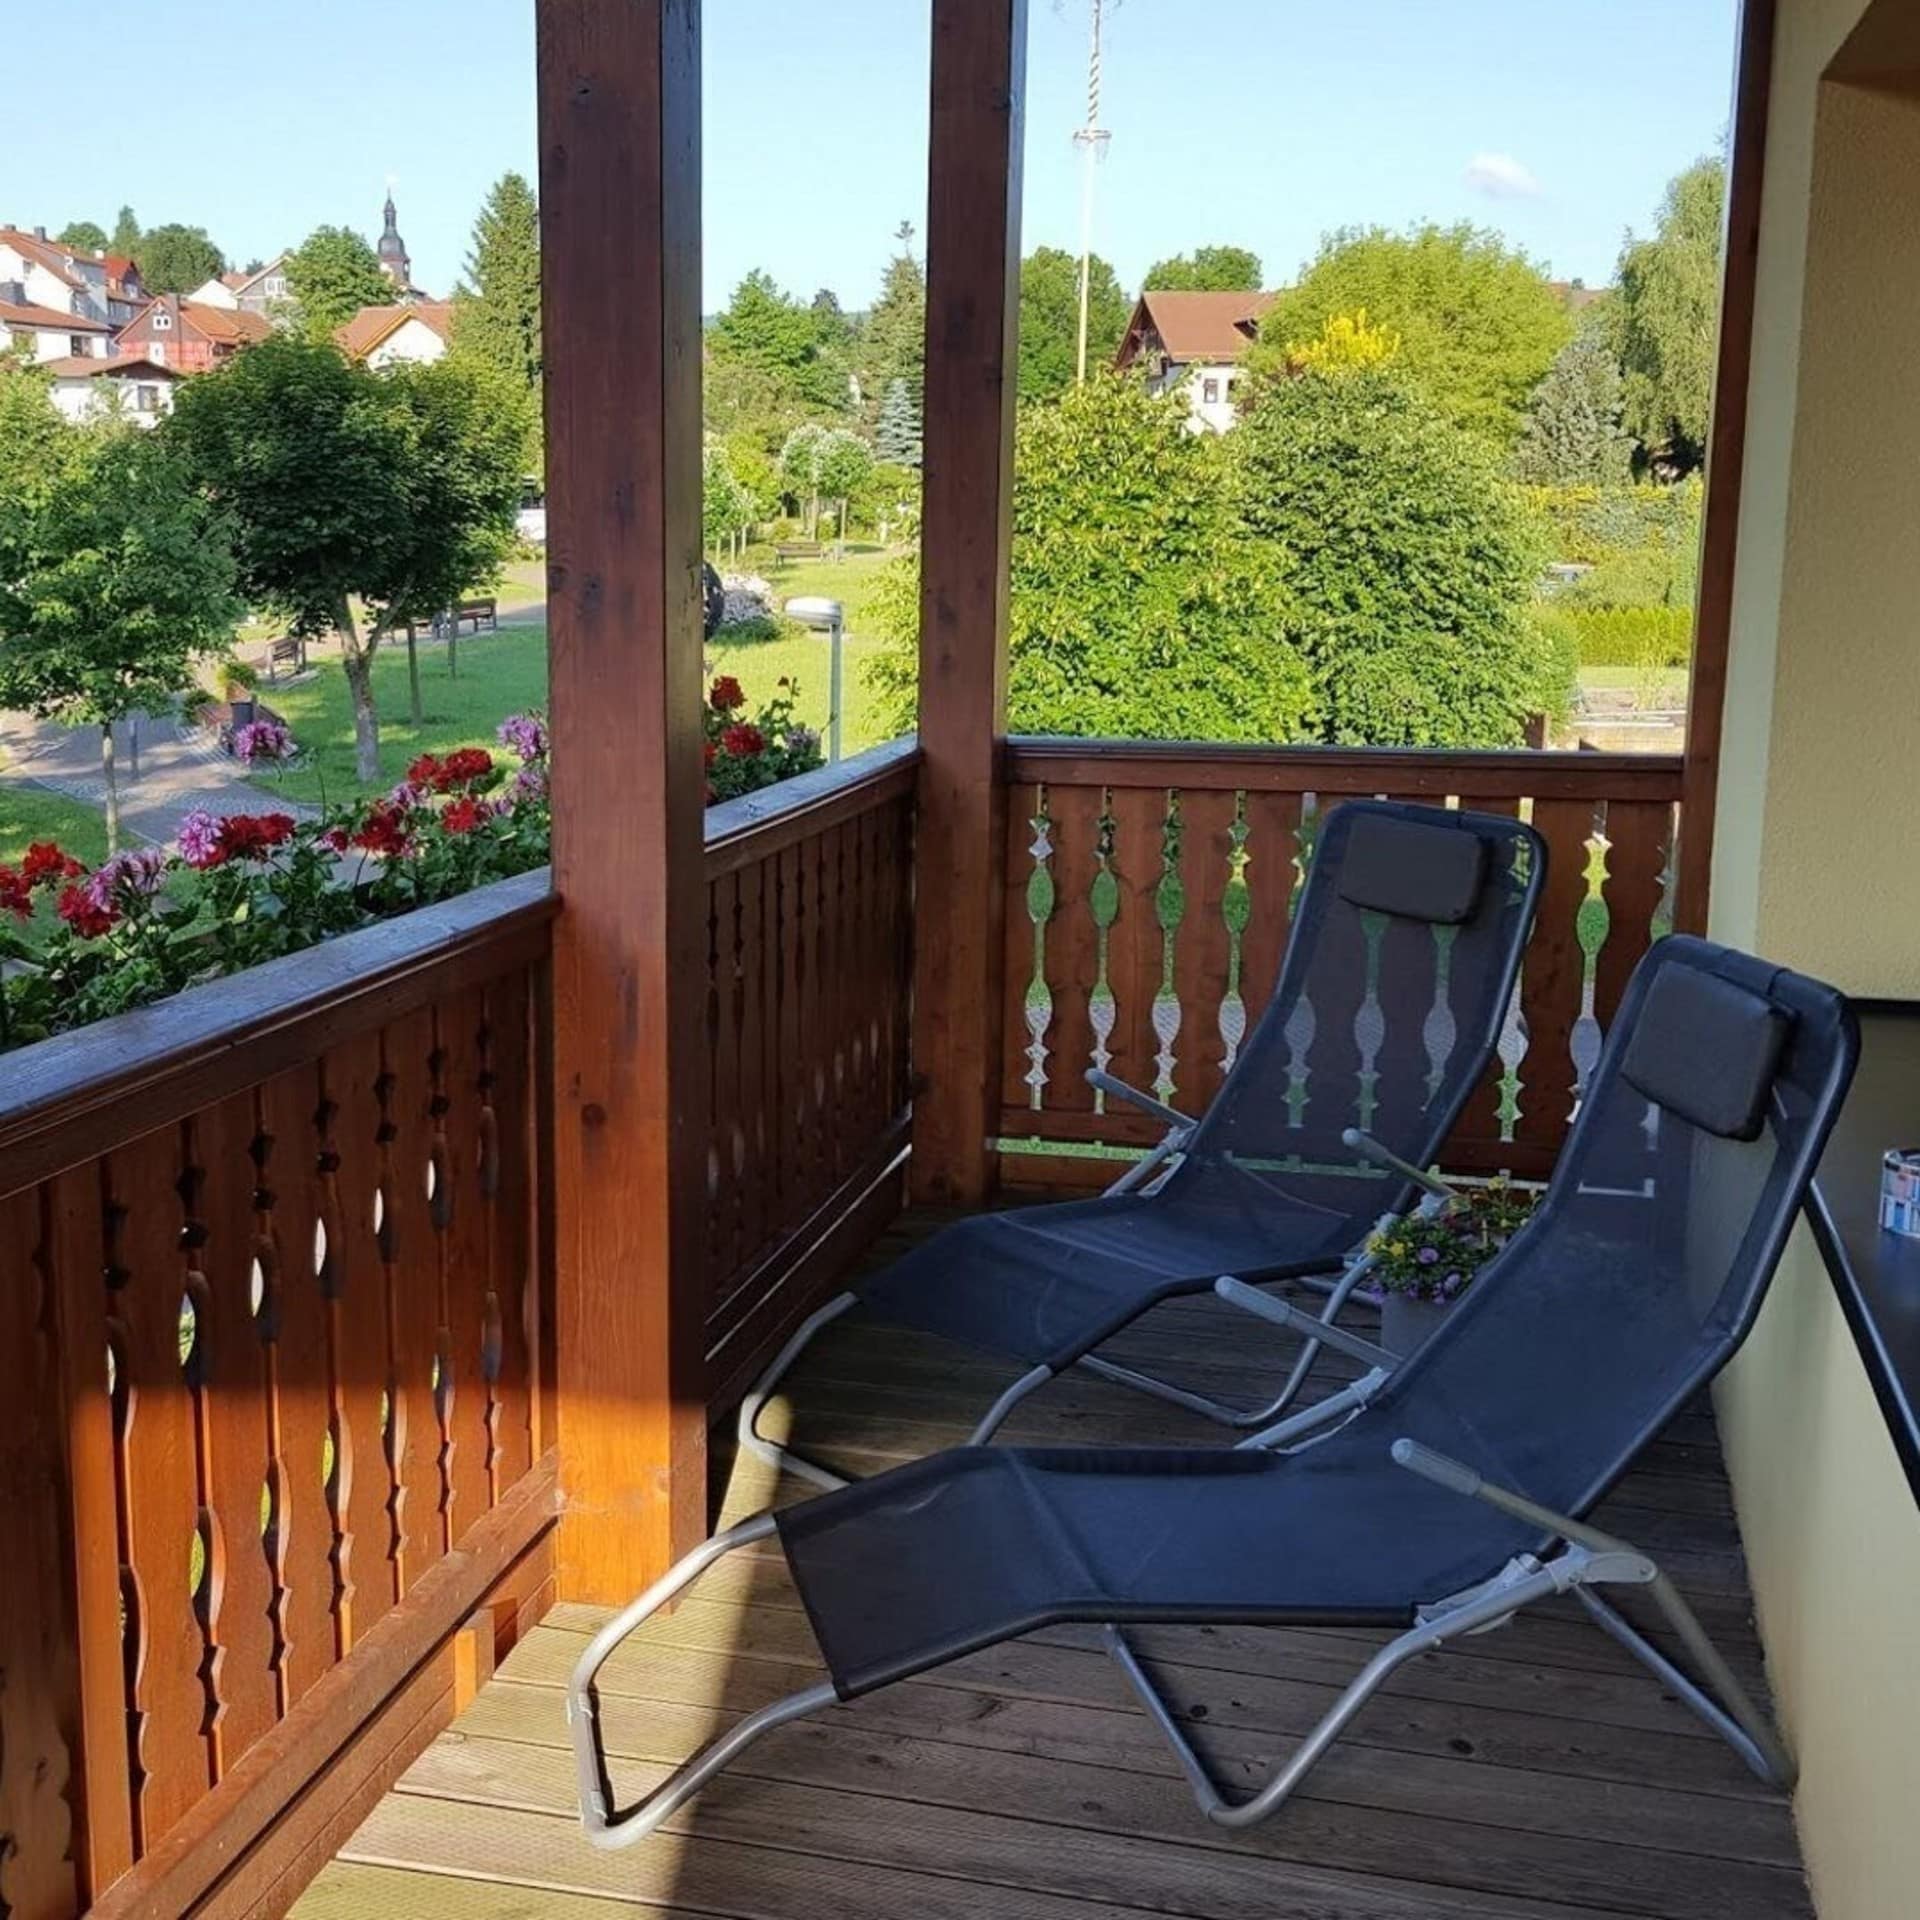 Balkon mit Liegestühlen und Blumen sowie Blick auf die Umgebung. 